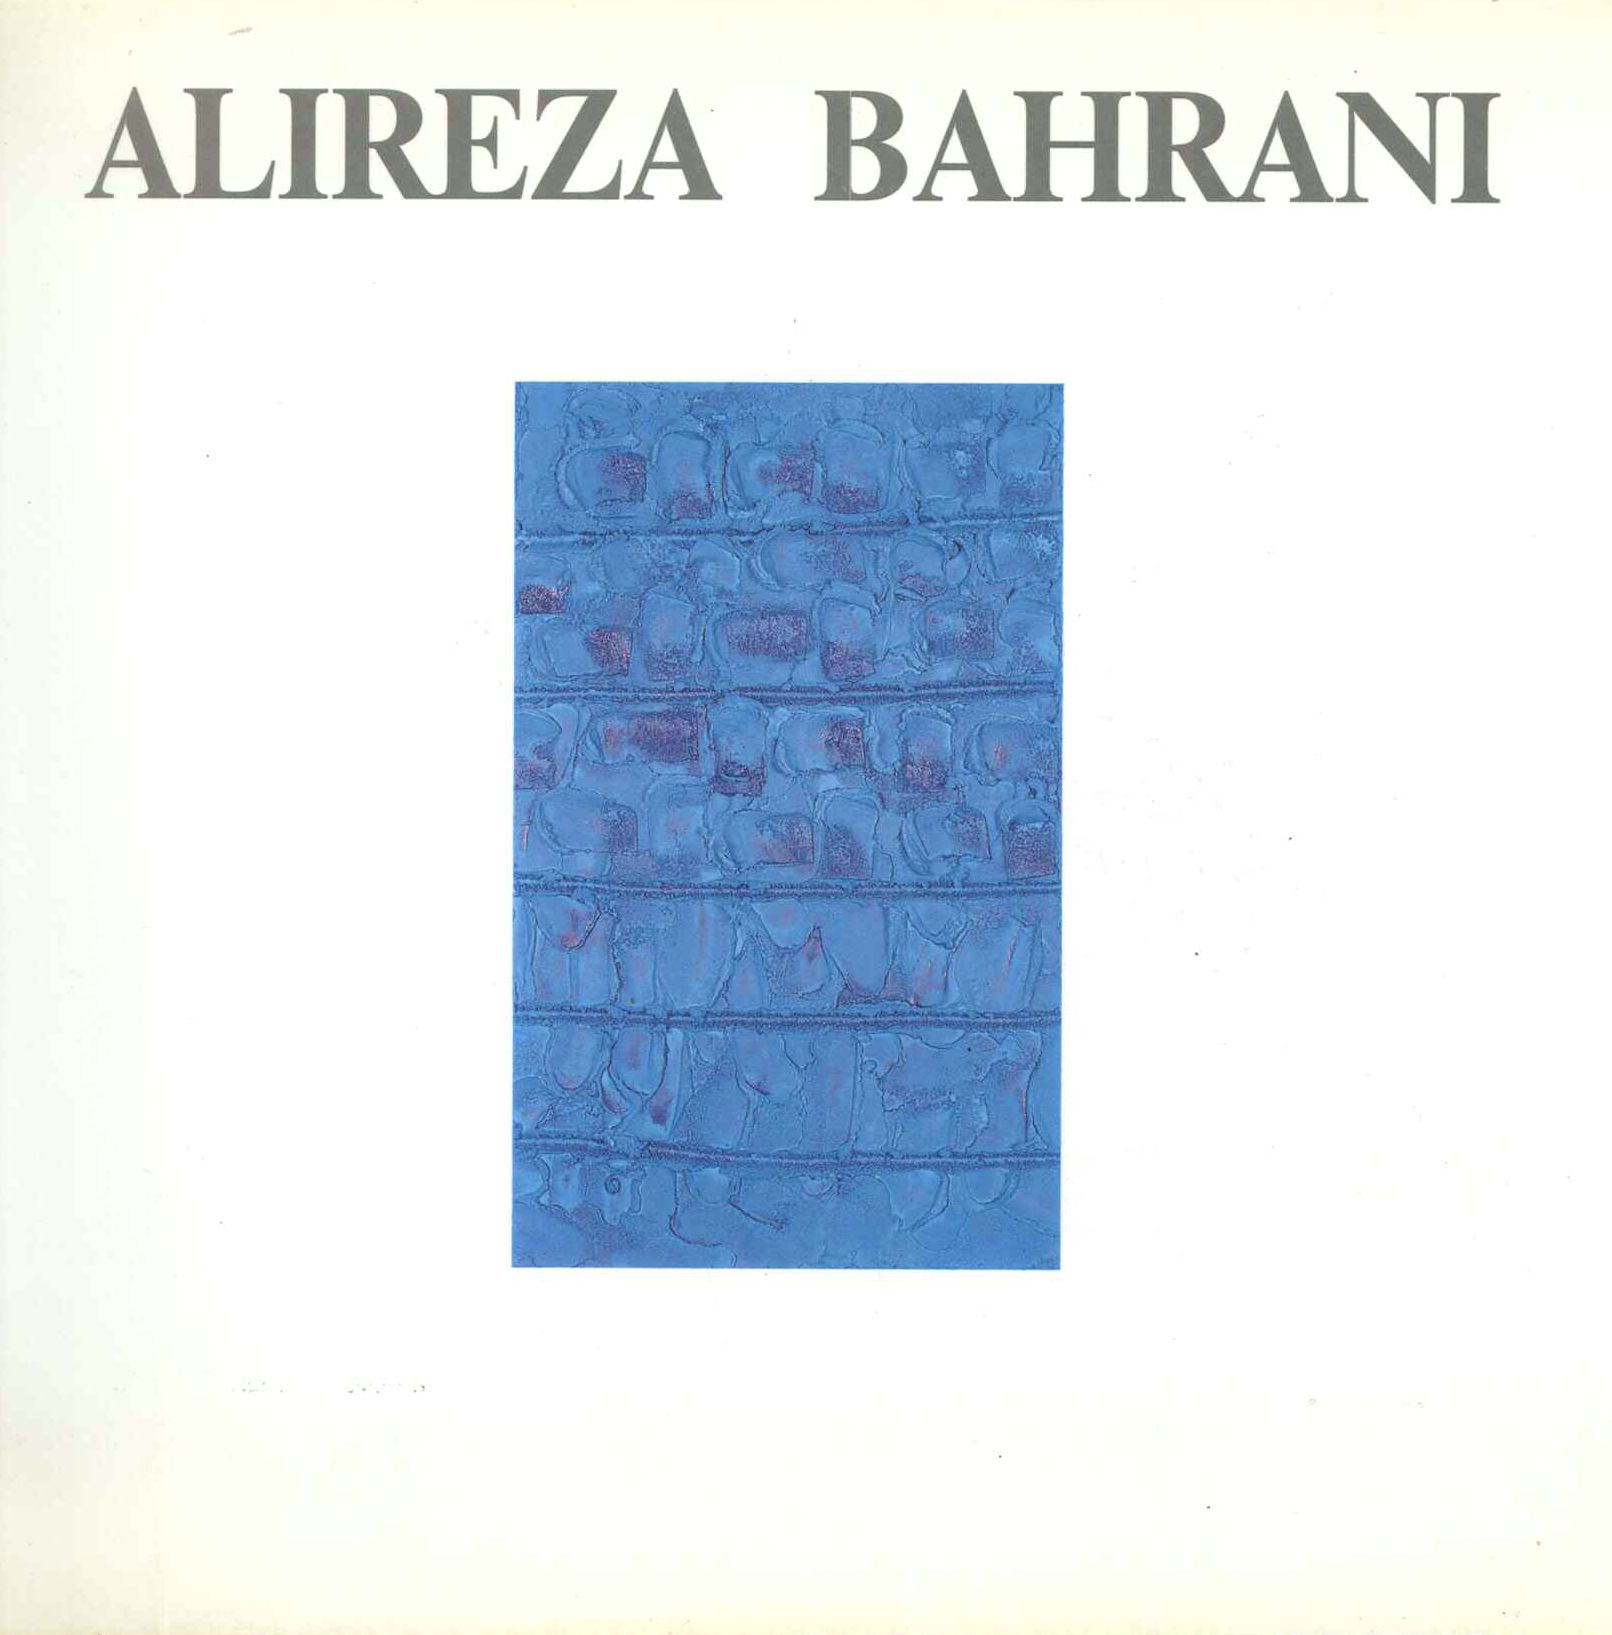 Alireza Bahrani